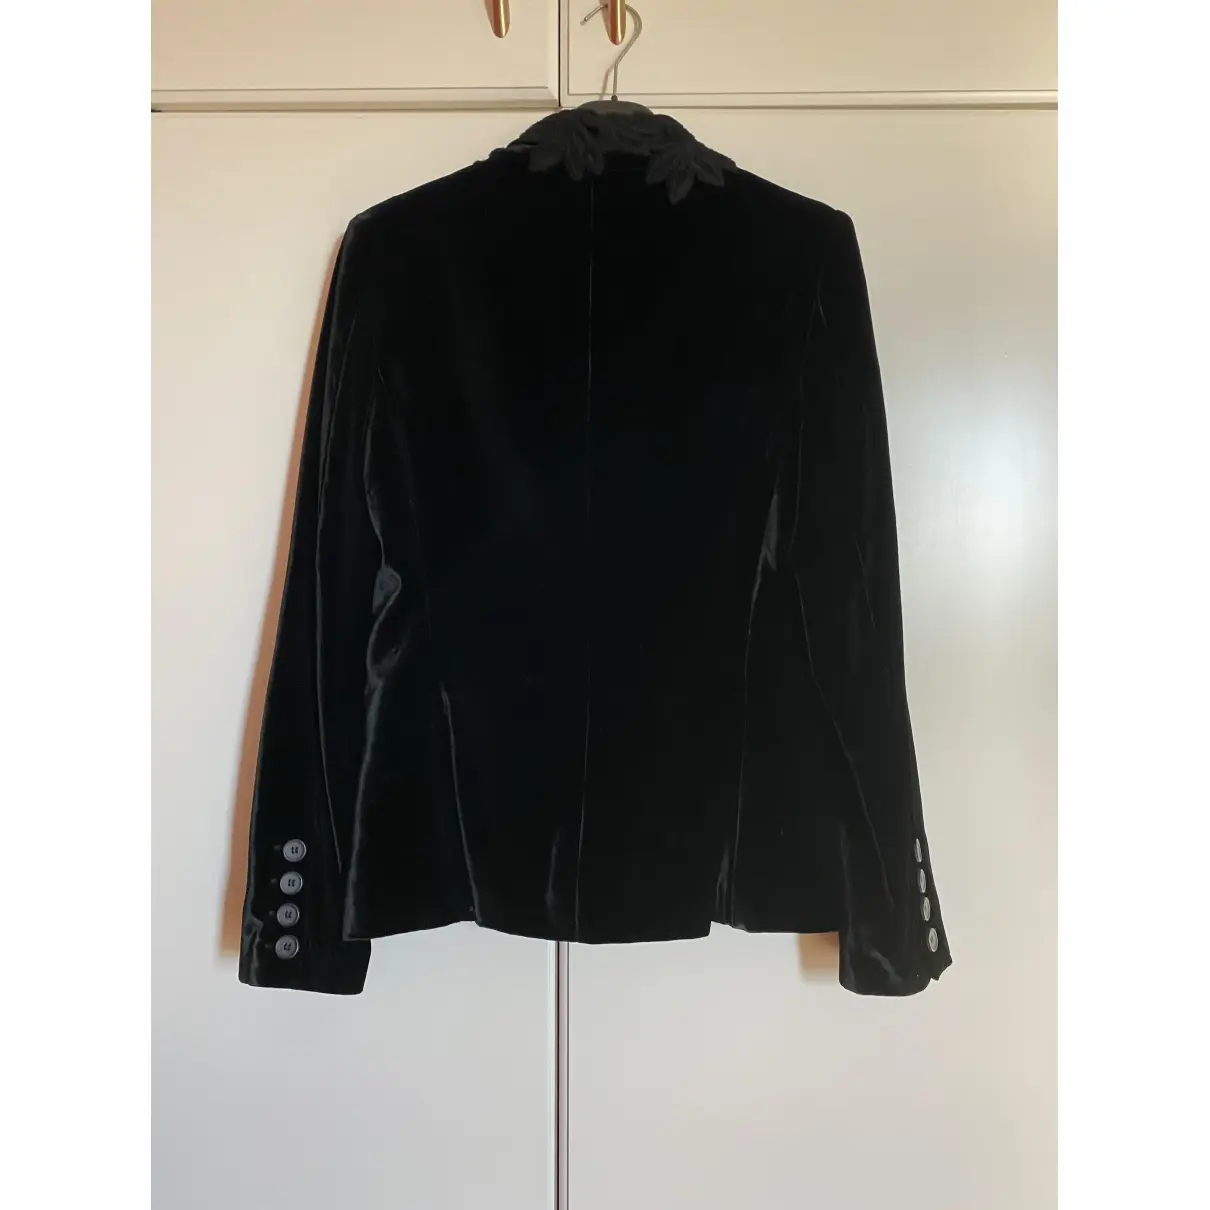 Buy D&G Black Viscose Jacket online